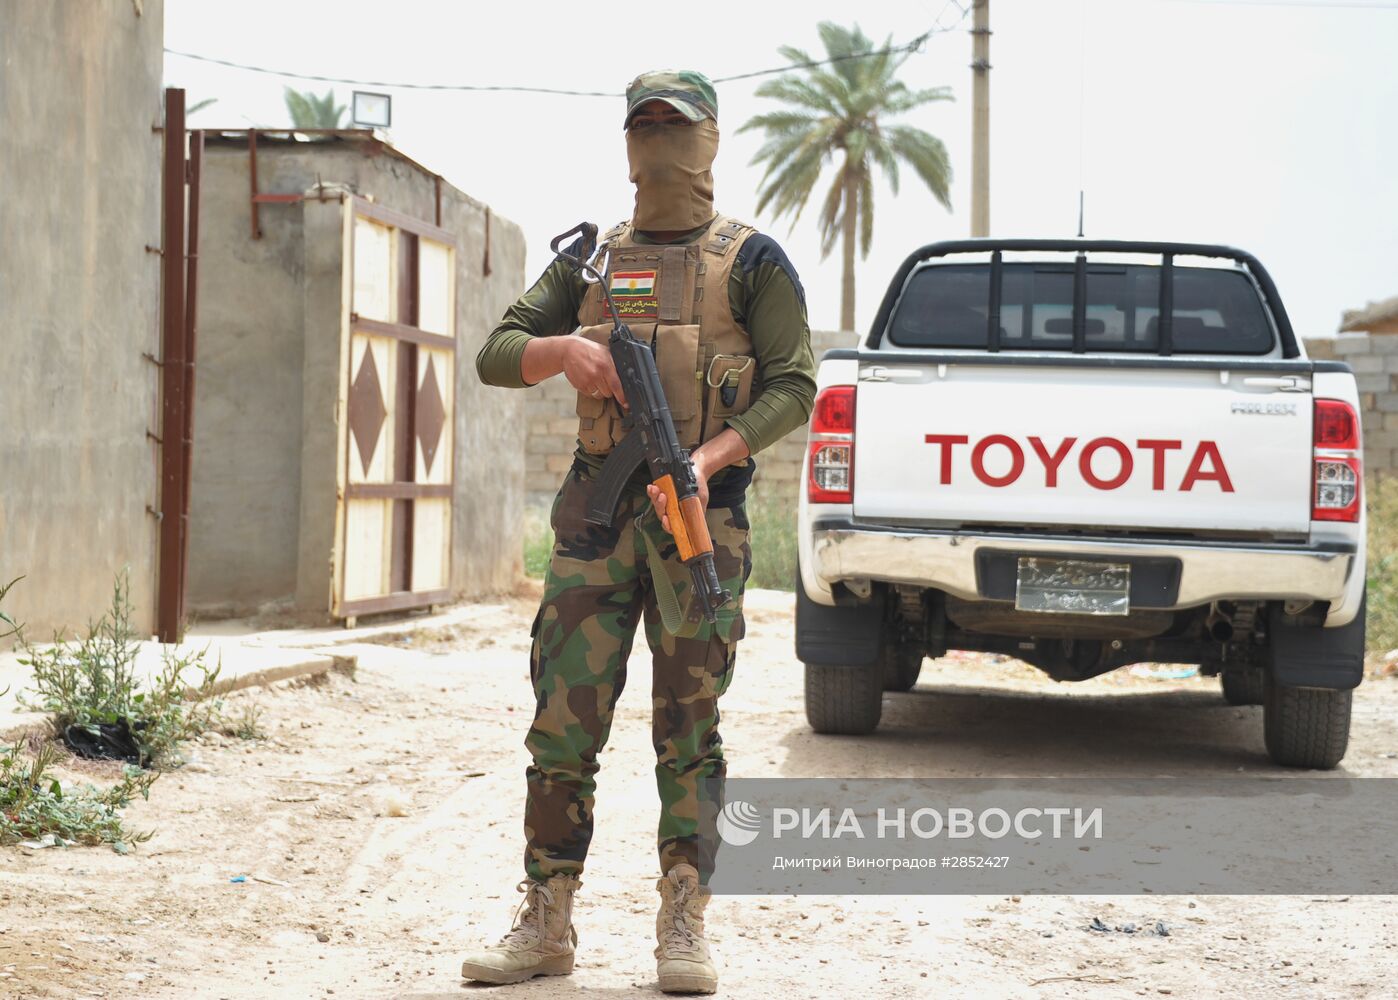 Вооруженные силы Иракского Курдистана в провинции Киркук в Ираке